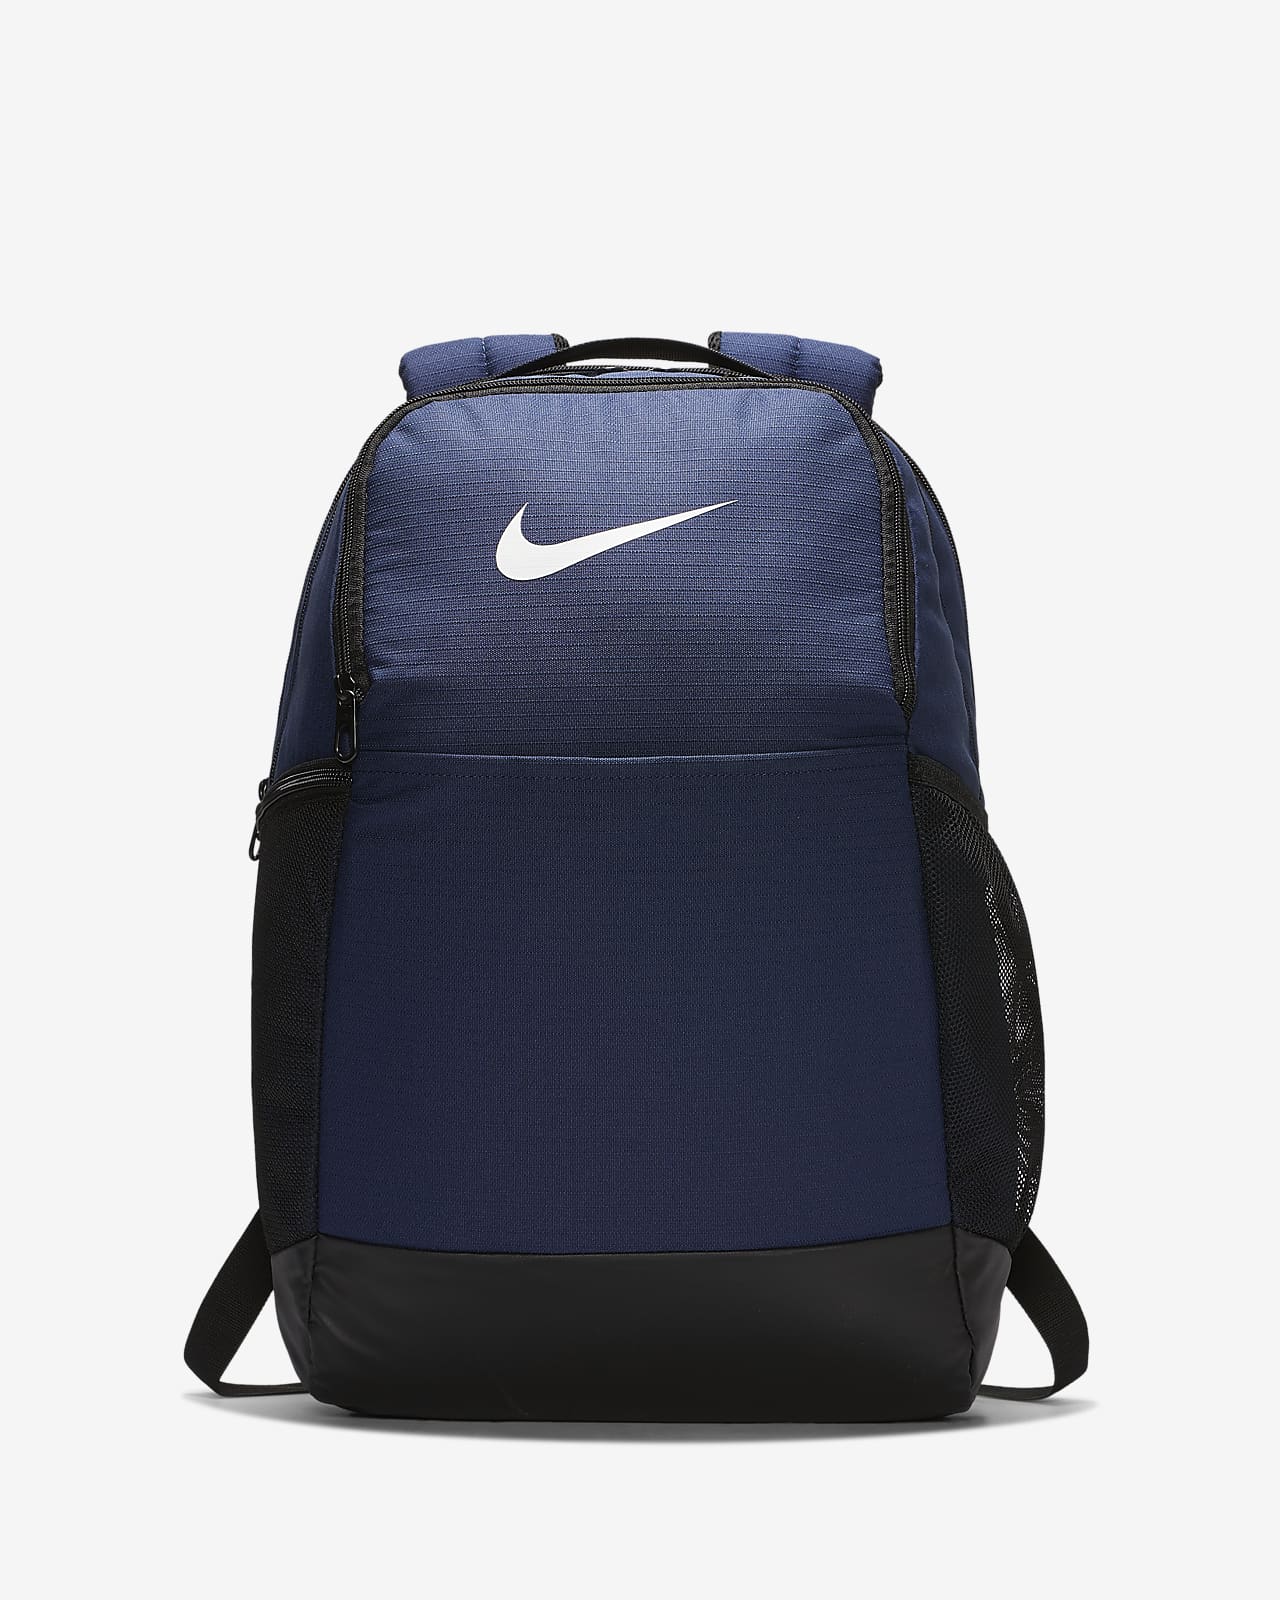 Рюкзак для тренинга Nike Brasilia (средний размер)